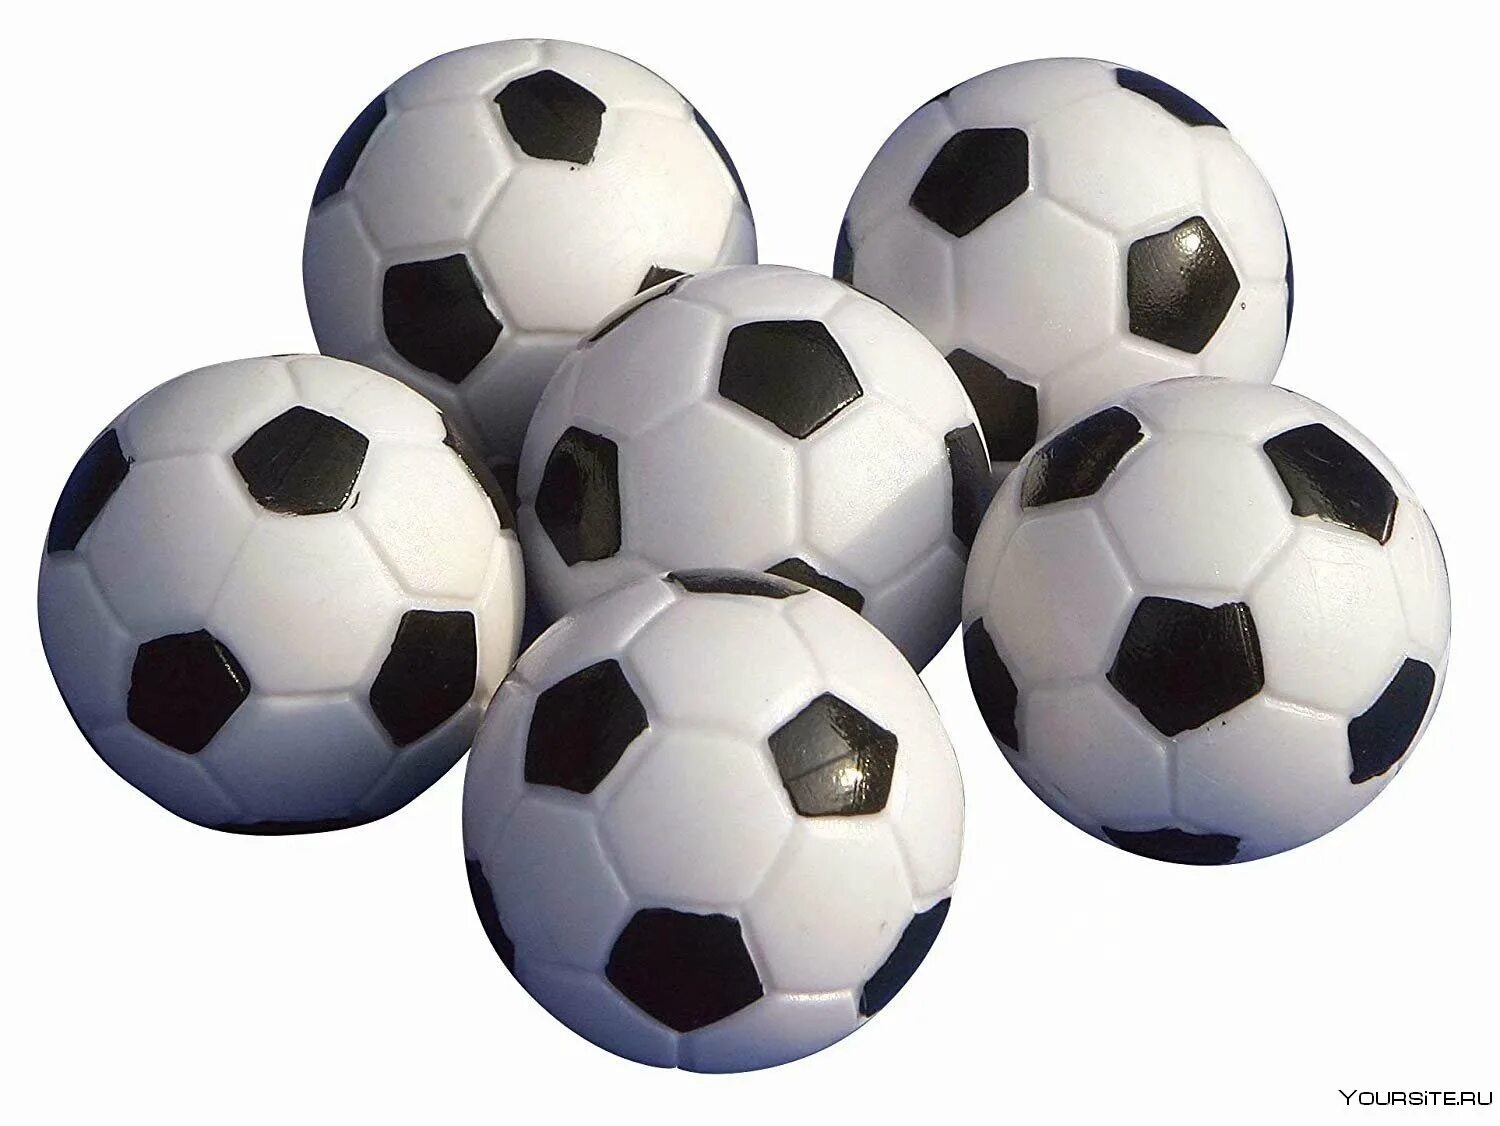 Футбольный мяч. Прозрачный футбольный мяч. Футбольный мячик. Футбольный мяч без фона. Какой мяч в мини футболе